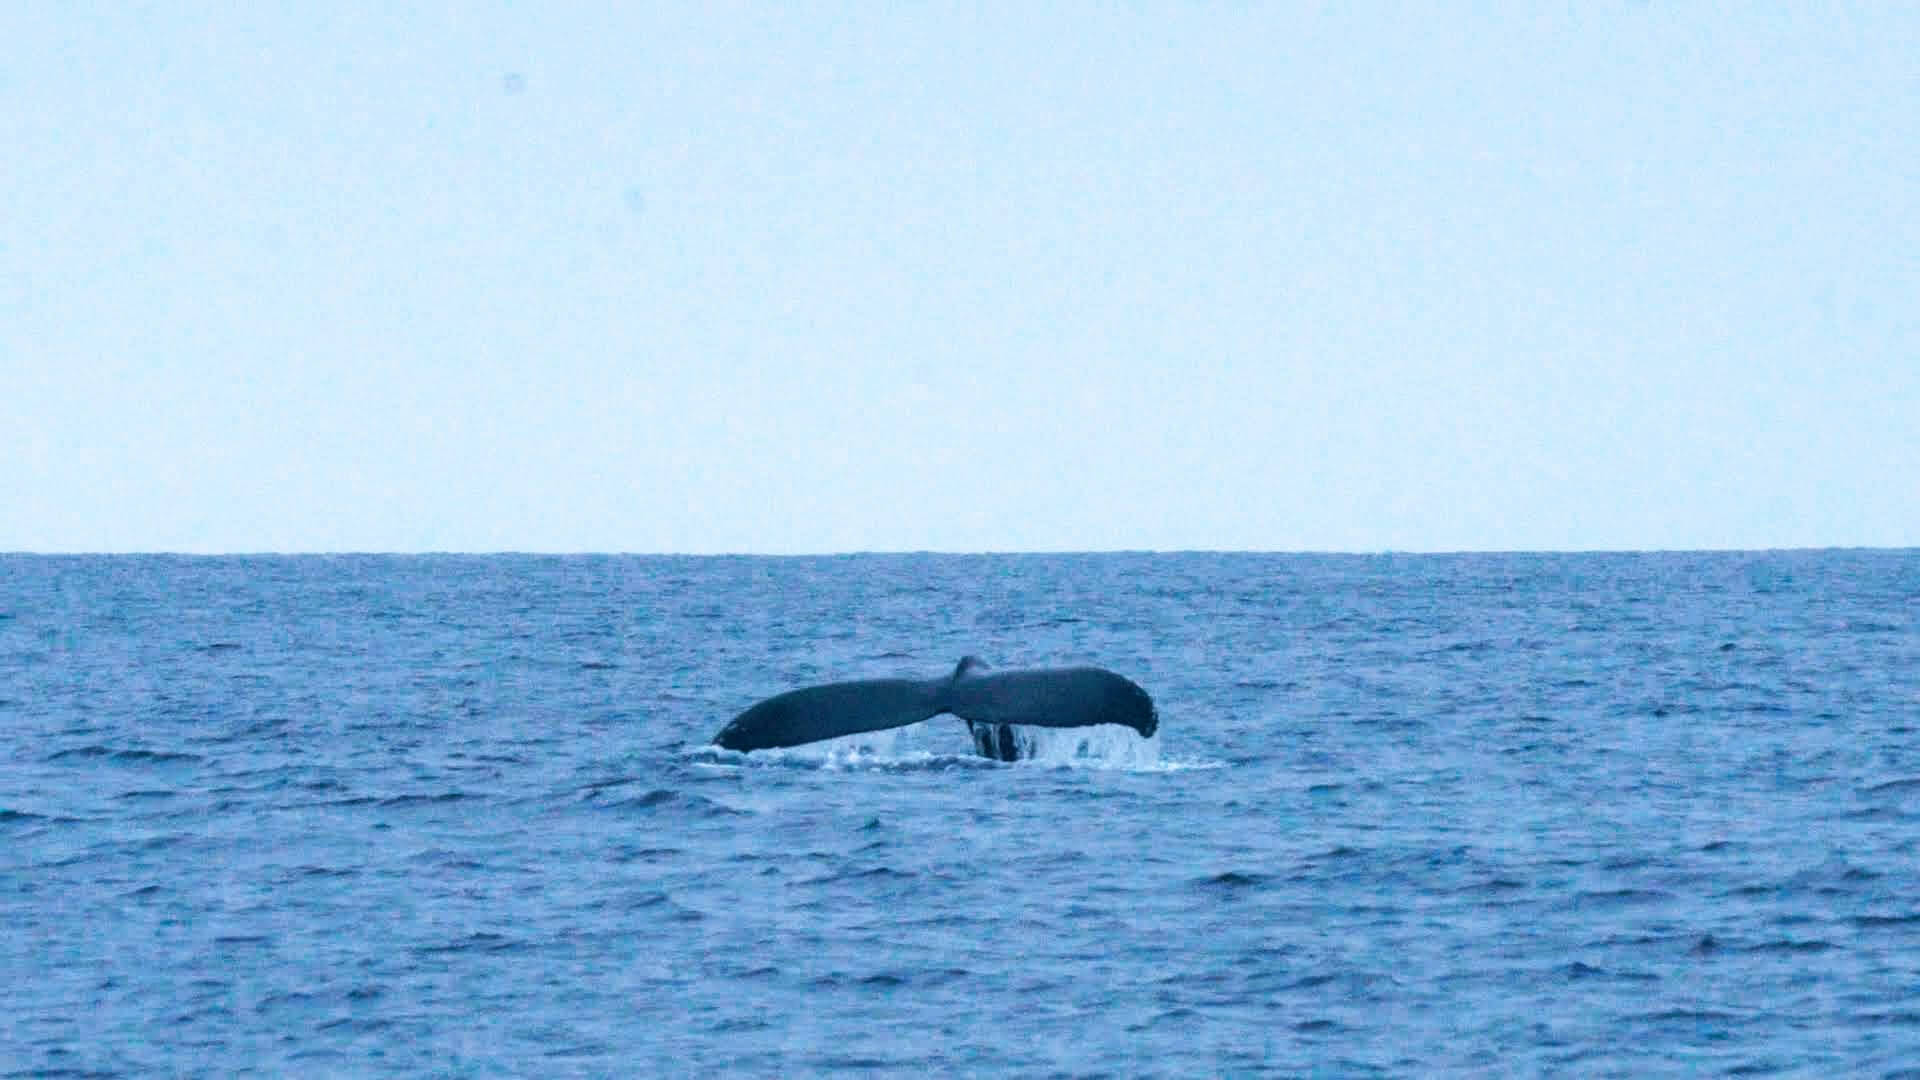 ホエールウォッチングでよく見られる、息継ぎが終わって潜水するポージング「フルークダウン」をするザトウクジラ